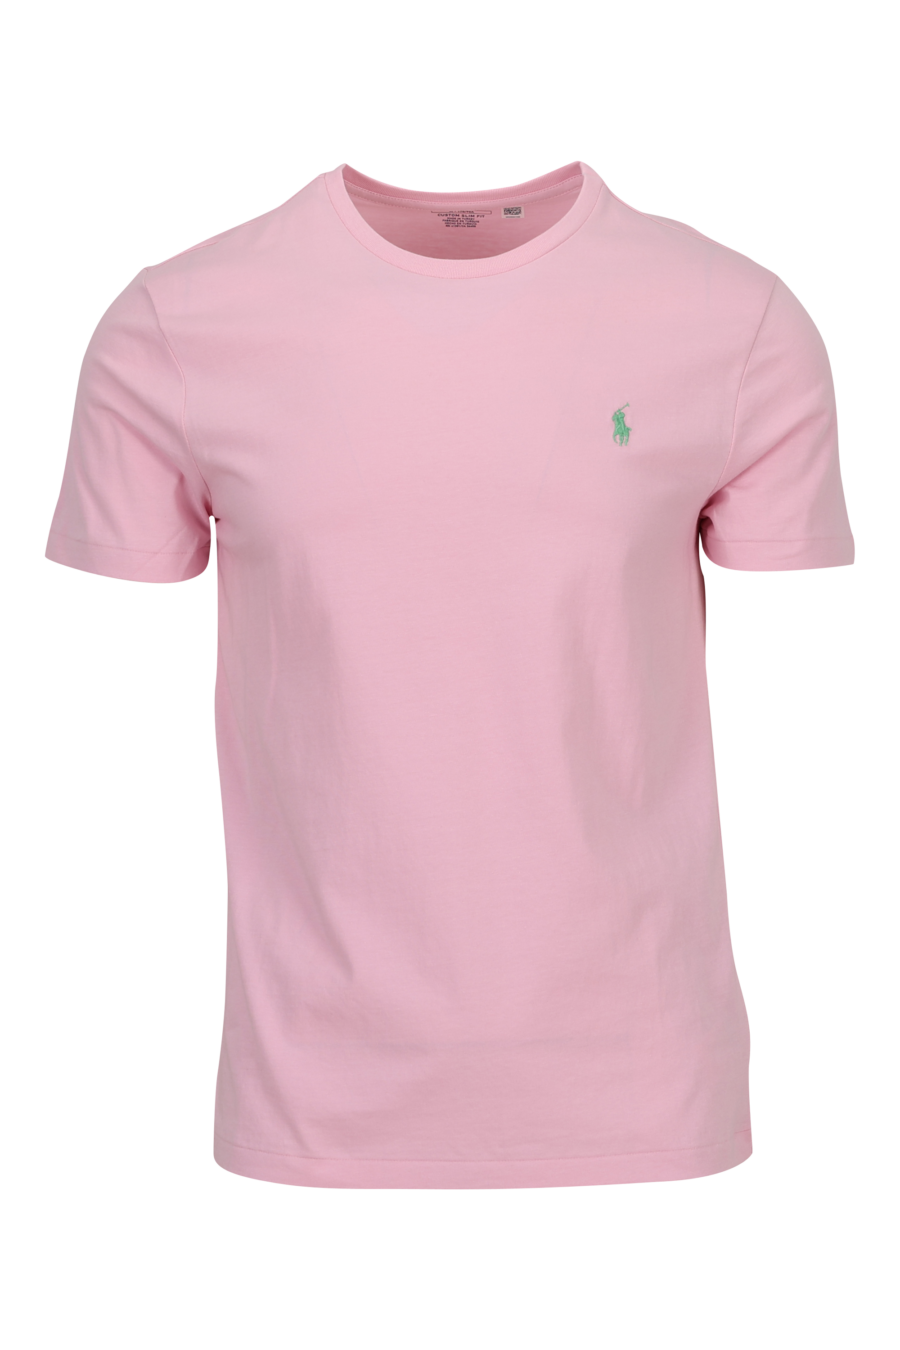 Camiseta rosa con minilogo "polo" verde - 3616536032445